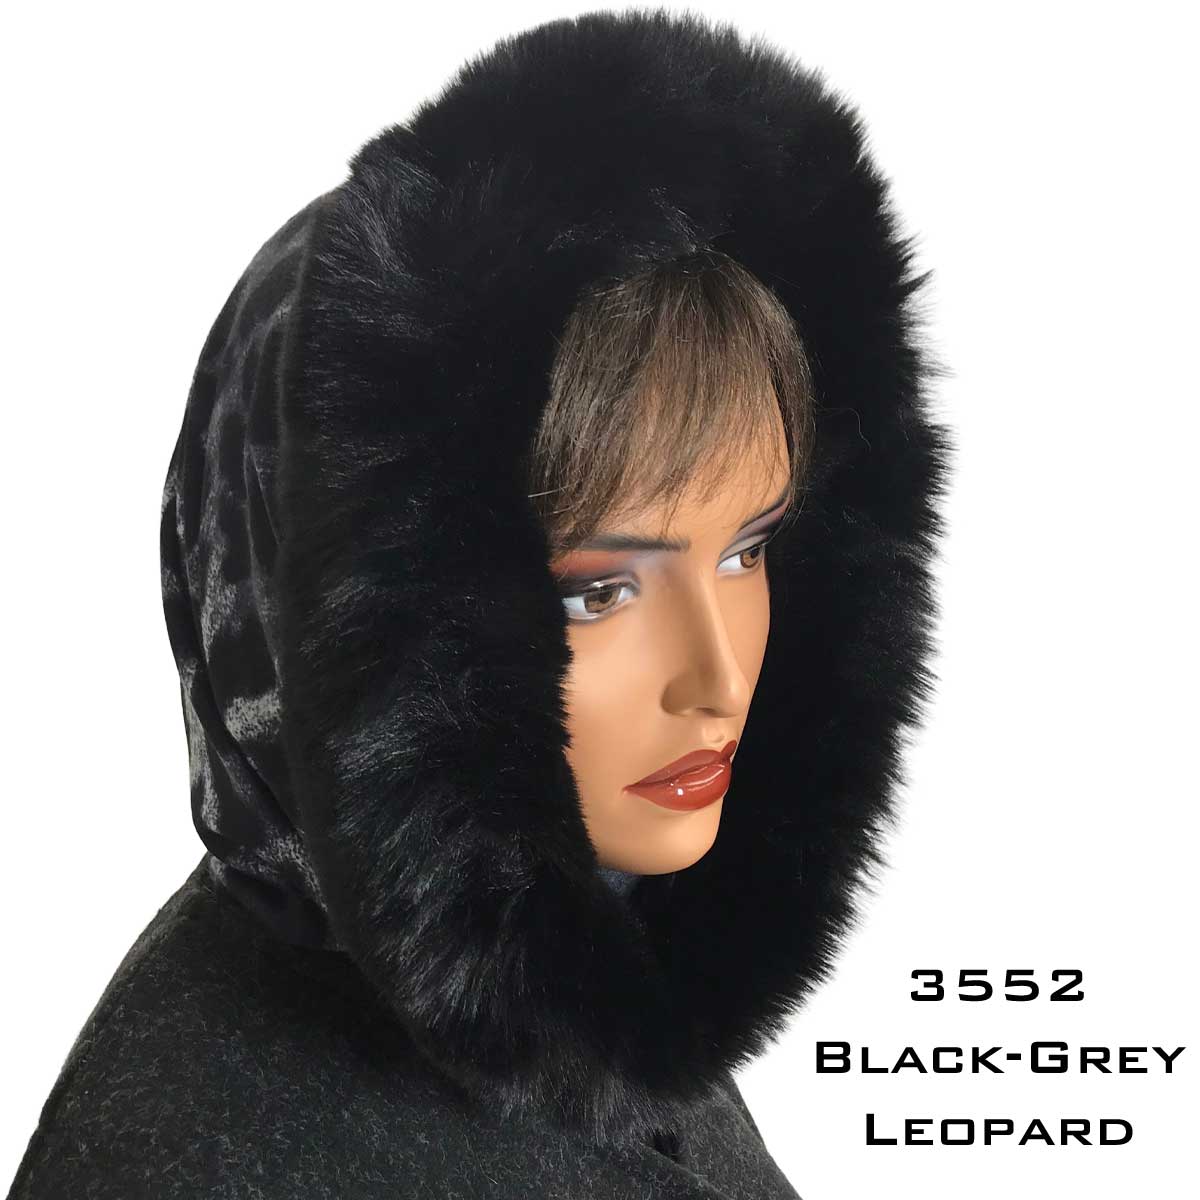 Leopard Black/Grey<br>
Black Fur Trimmed Infinity Hood